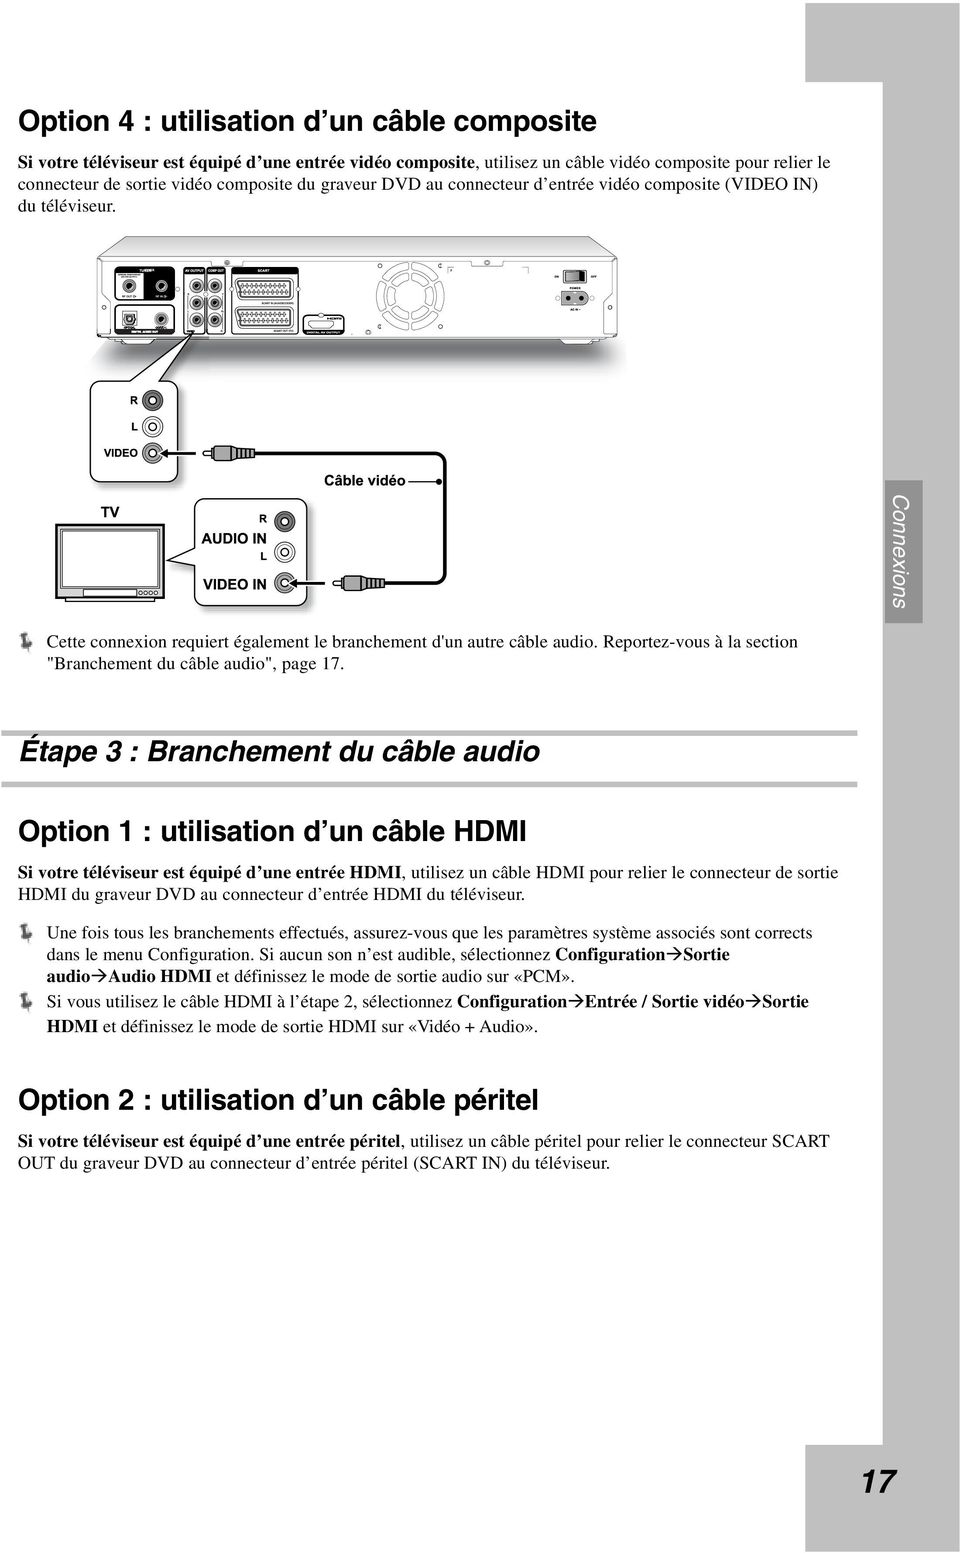 Reportez-vous à la section "Branchement du câble audio", page 17.